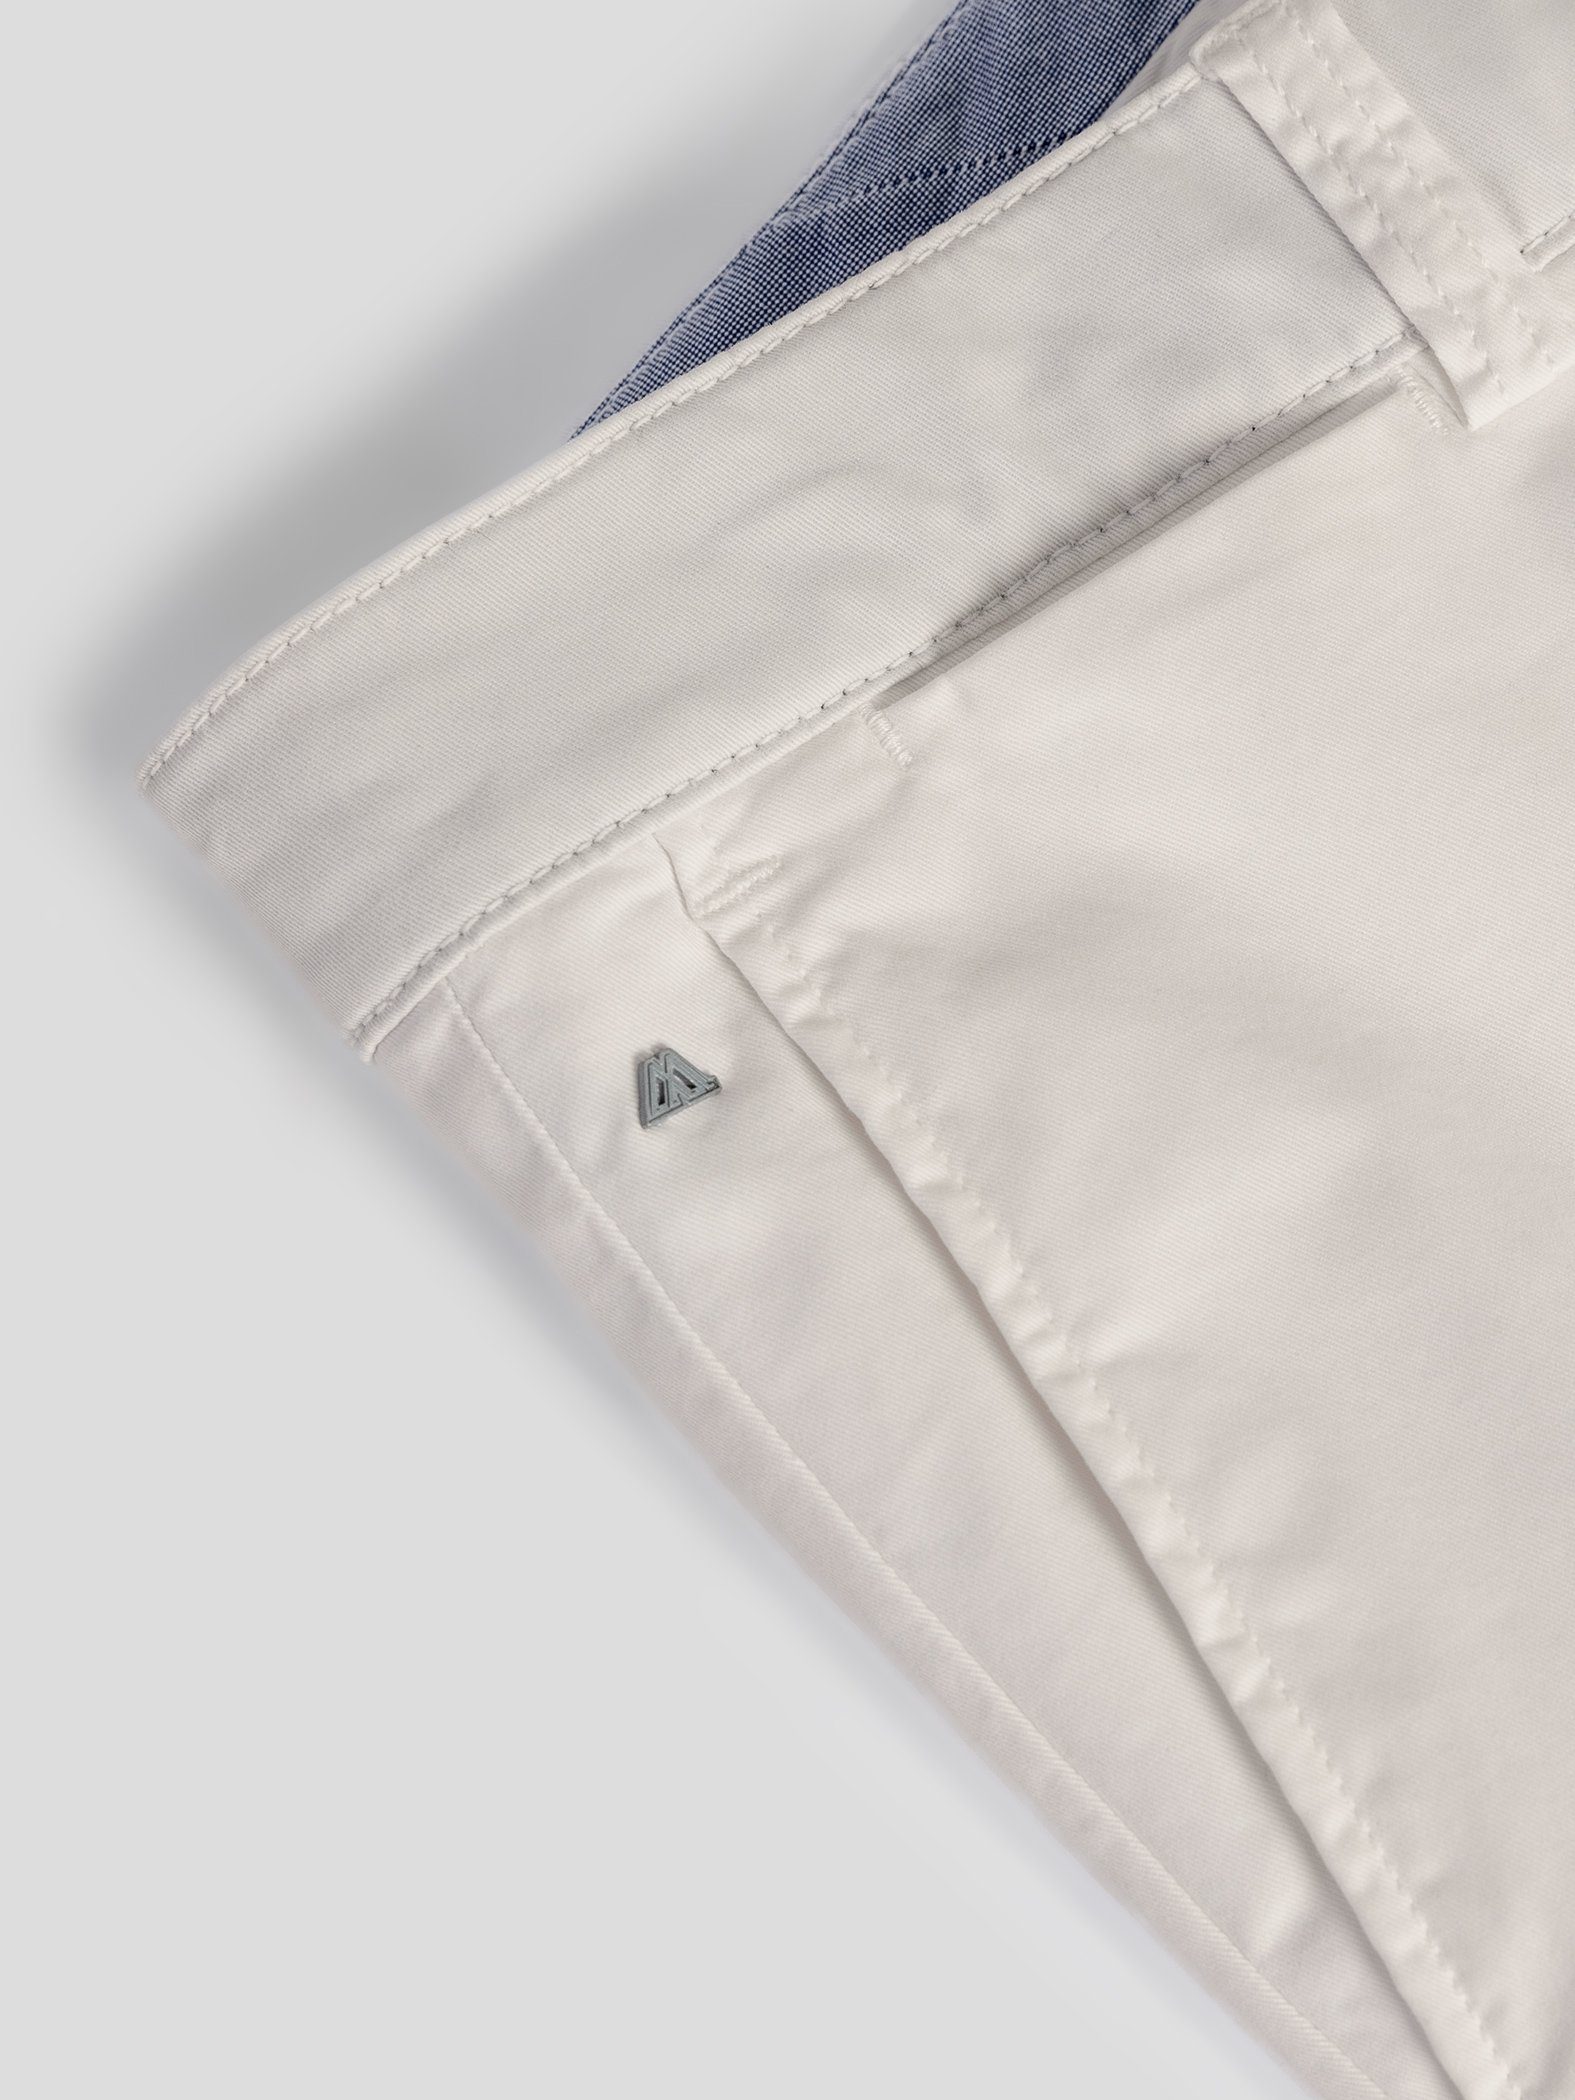 Shorts Bund, Shorts TwoMates Farbauswahl, elastischem mit hellbeige GOTS-zertifiziert